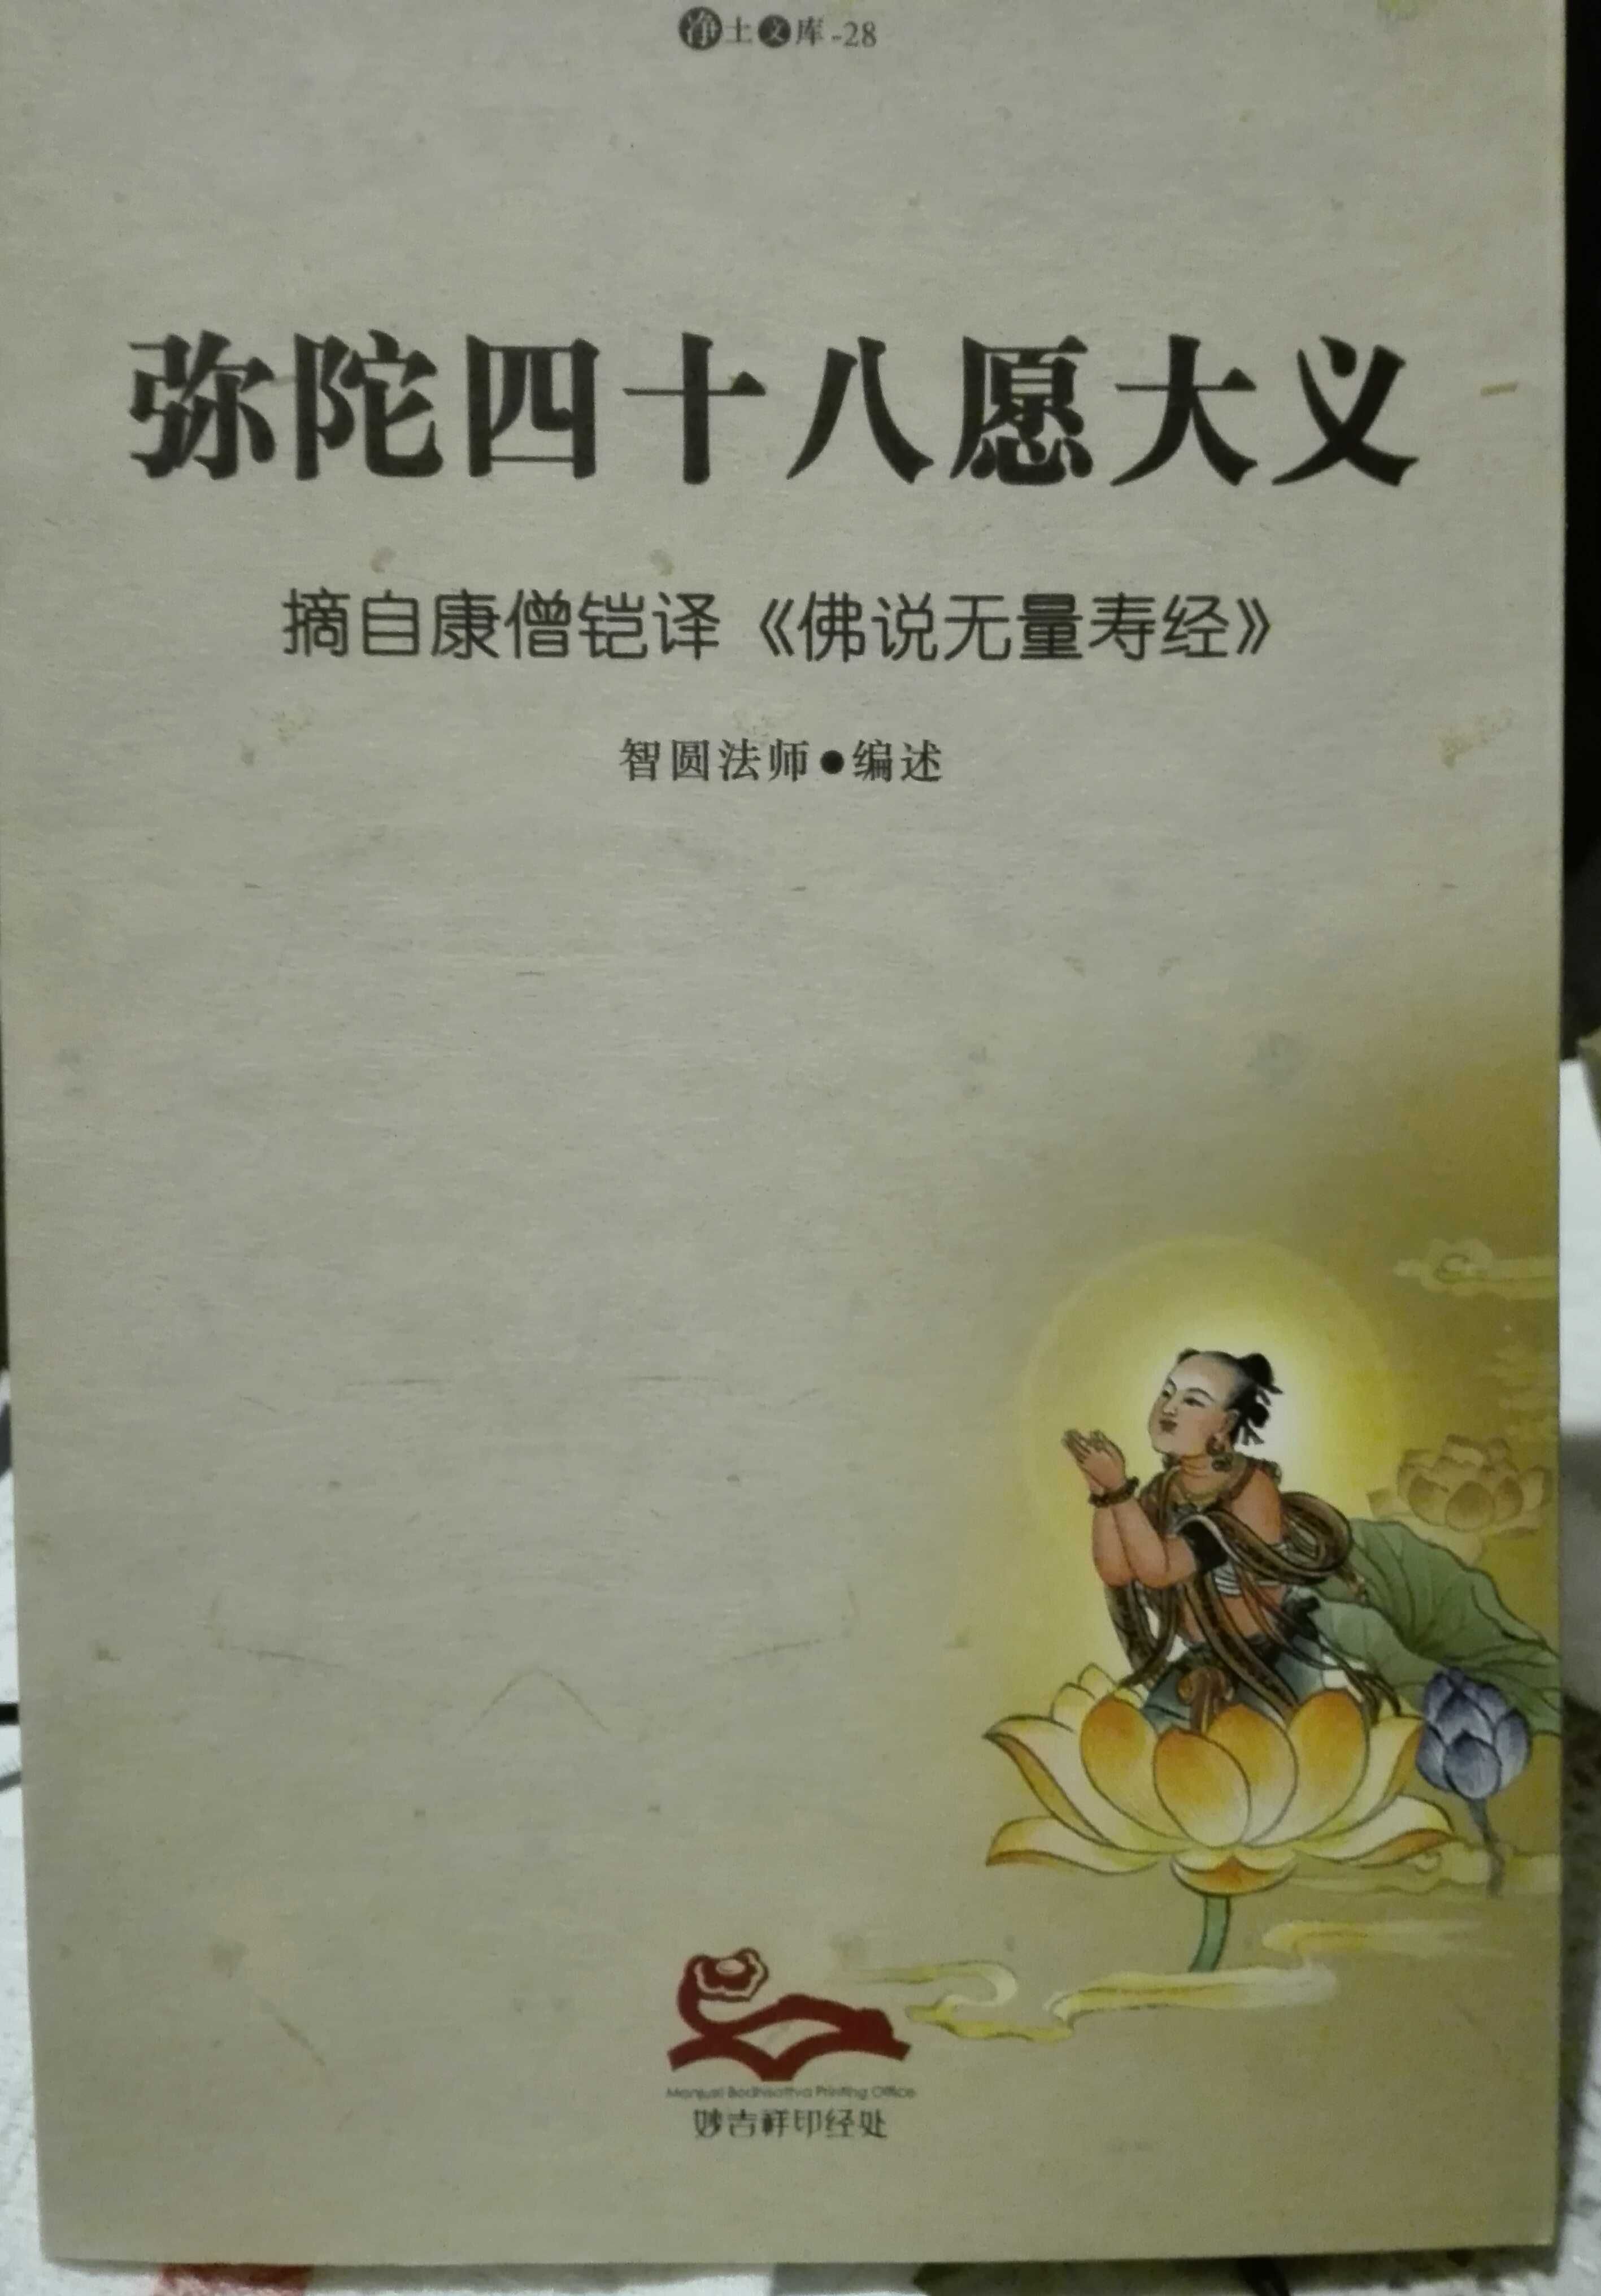 Livros chineses novos